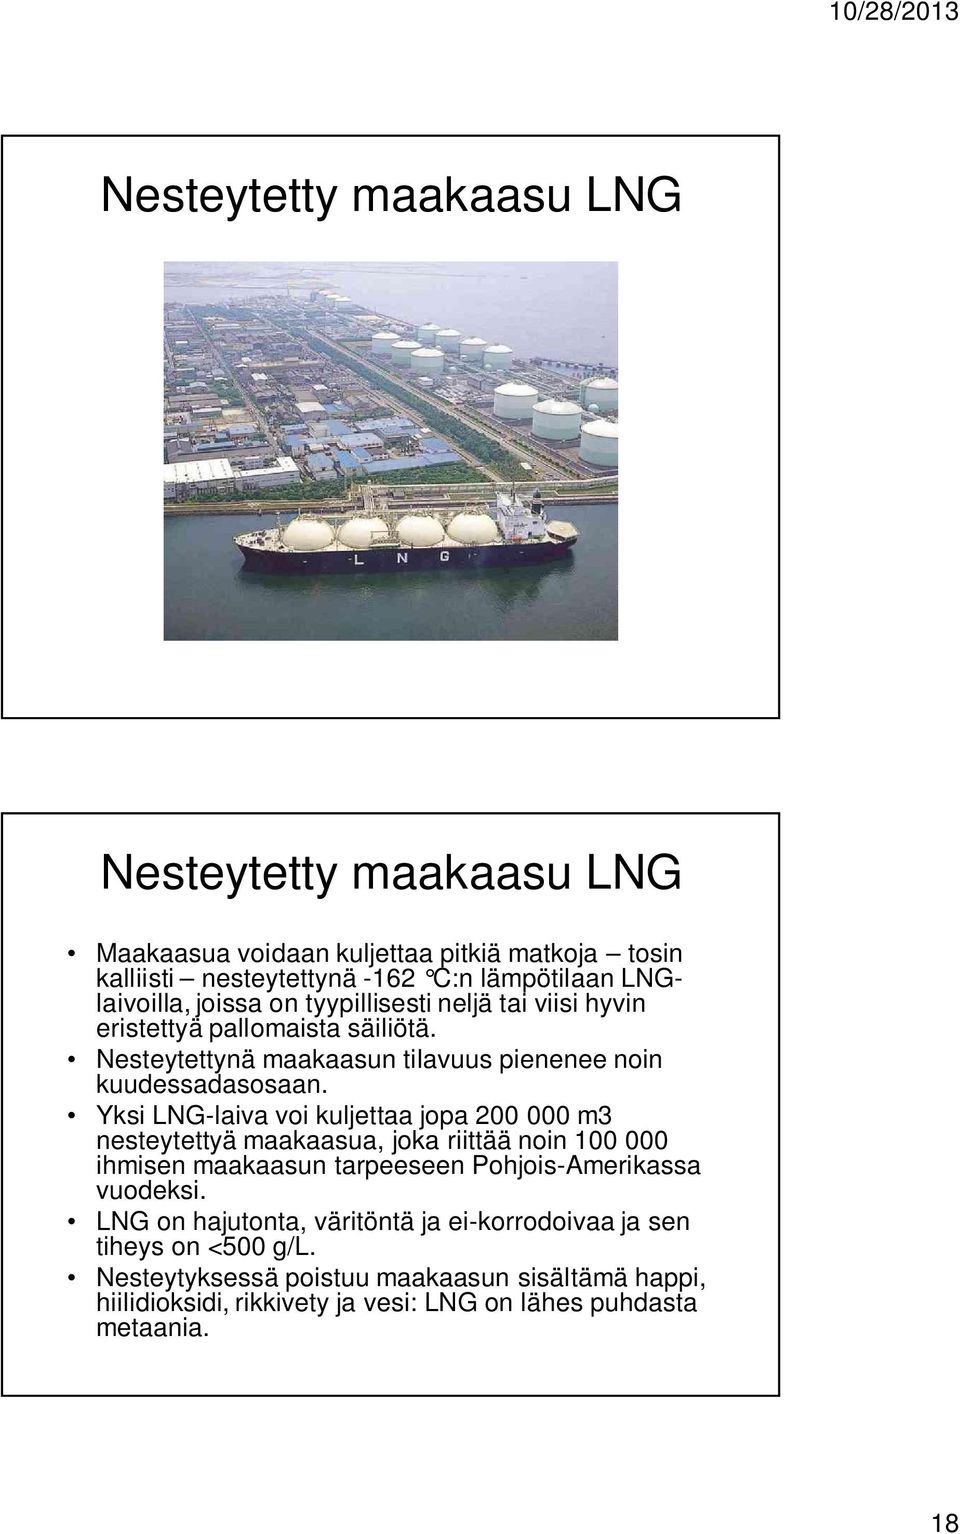 Yksi LNG-laiva voi kuljettaa jopa 200 000 m3 nesteytettyä maakaasua, joka riittää noin 100 000 ihmisen maakaasun tarpeeseen Pohjois-Amerikassa vuodeksi.